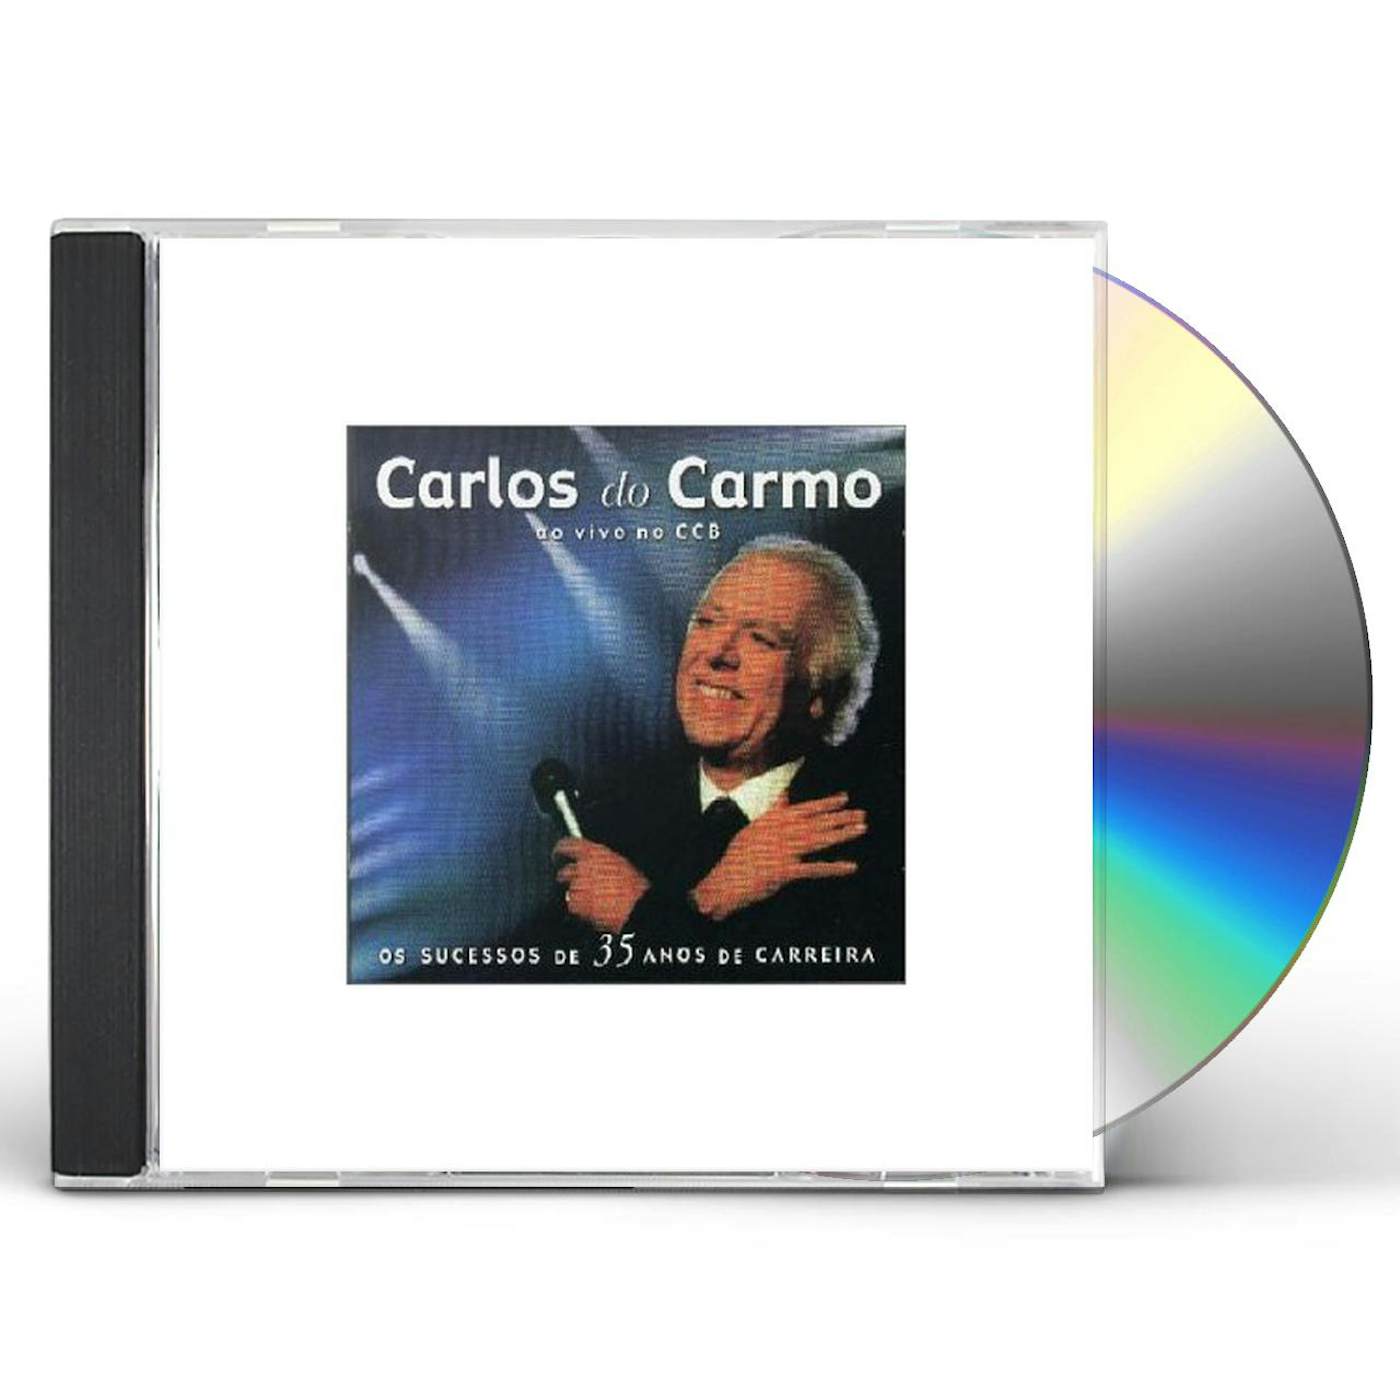 Carlos Do Carmo AO VIVO NO CCB: OS SUCESSOS DE 35 ANOS CD